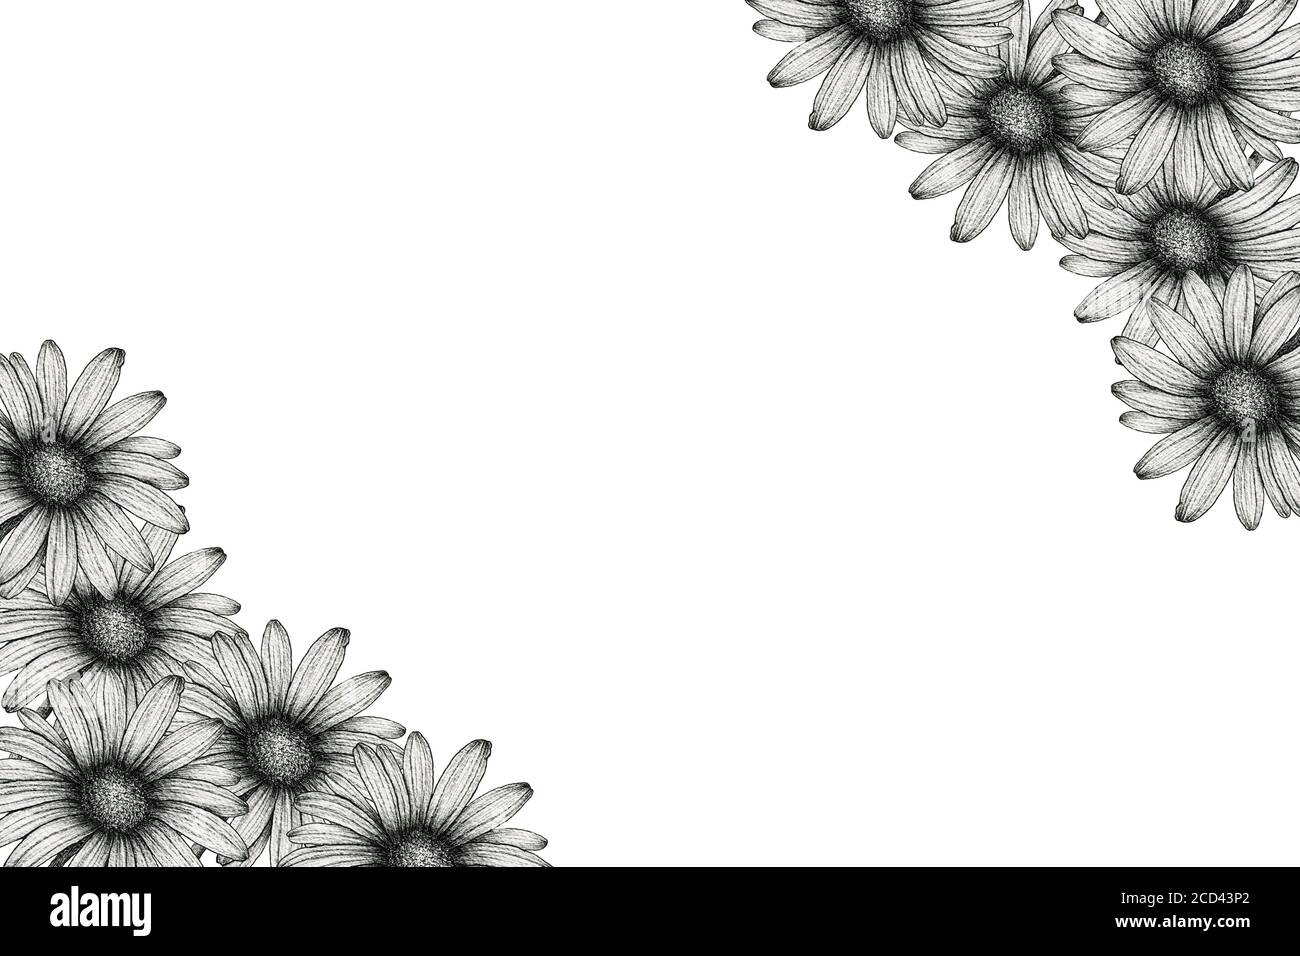 Hoa cúc đen trắng là sự kết hợp hoàn hảo giữa sự quyến rũ và tinh tế. Hãy chiêm ngưỡng đầy ấn tượng của chúng trên hình ảnh để cảm nhận được vẻ đẹp của hoa cúc đen trắng.